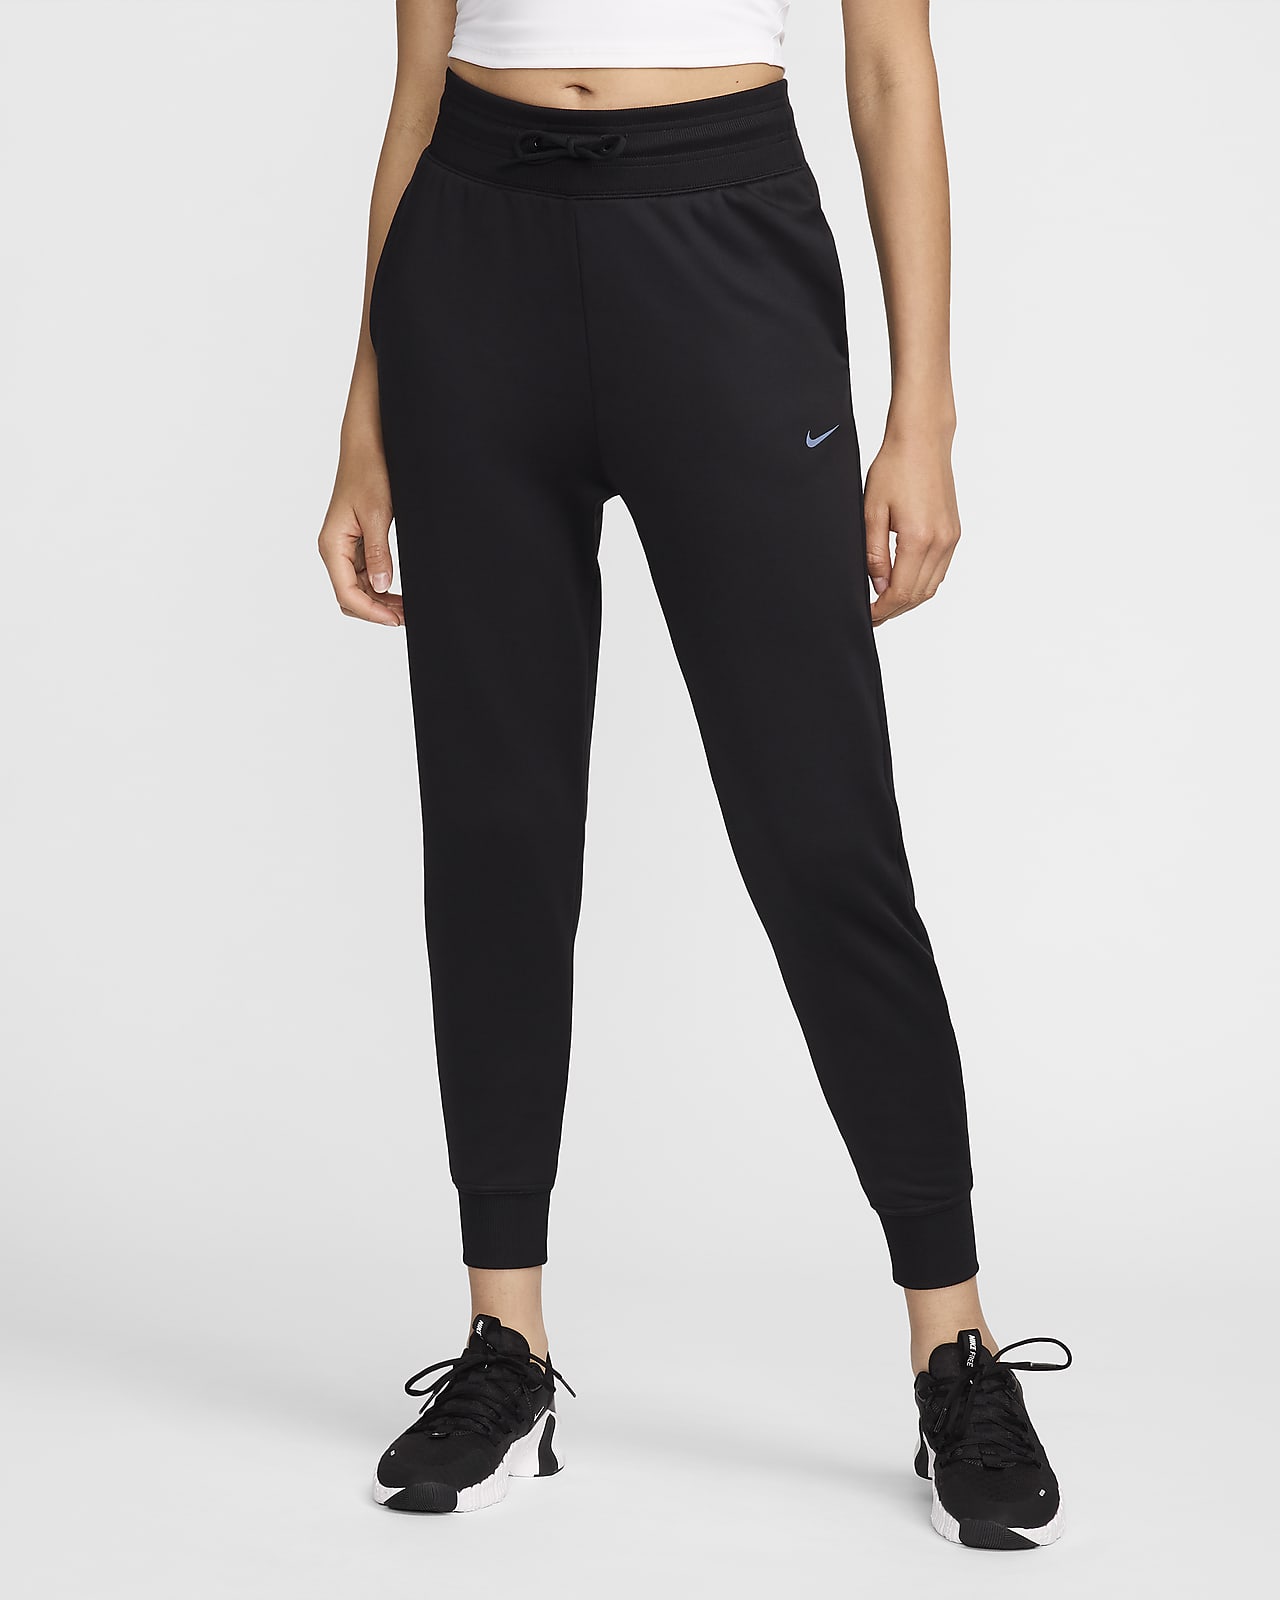 Pantalon de jogging 7/8 taille haute Nike Therma-FIT One pour femme